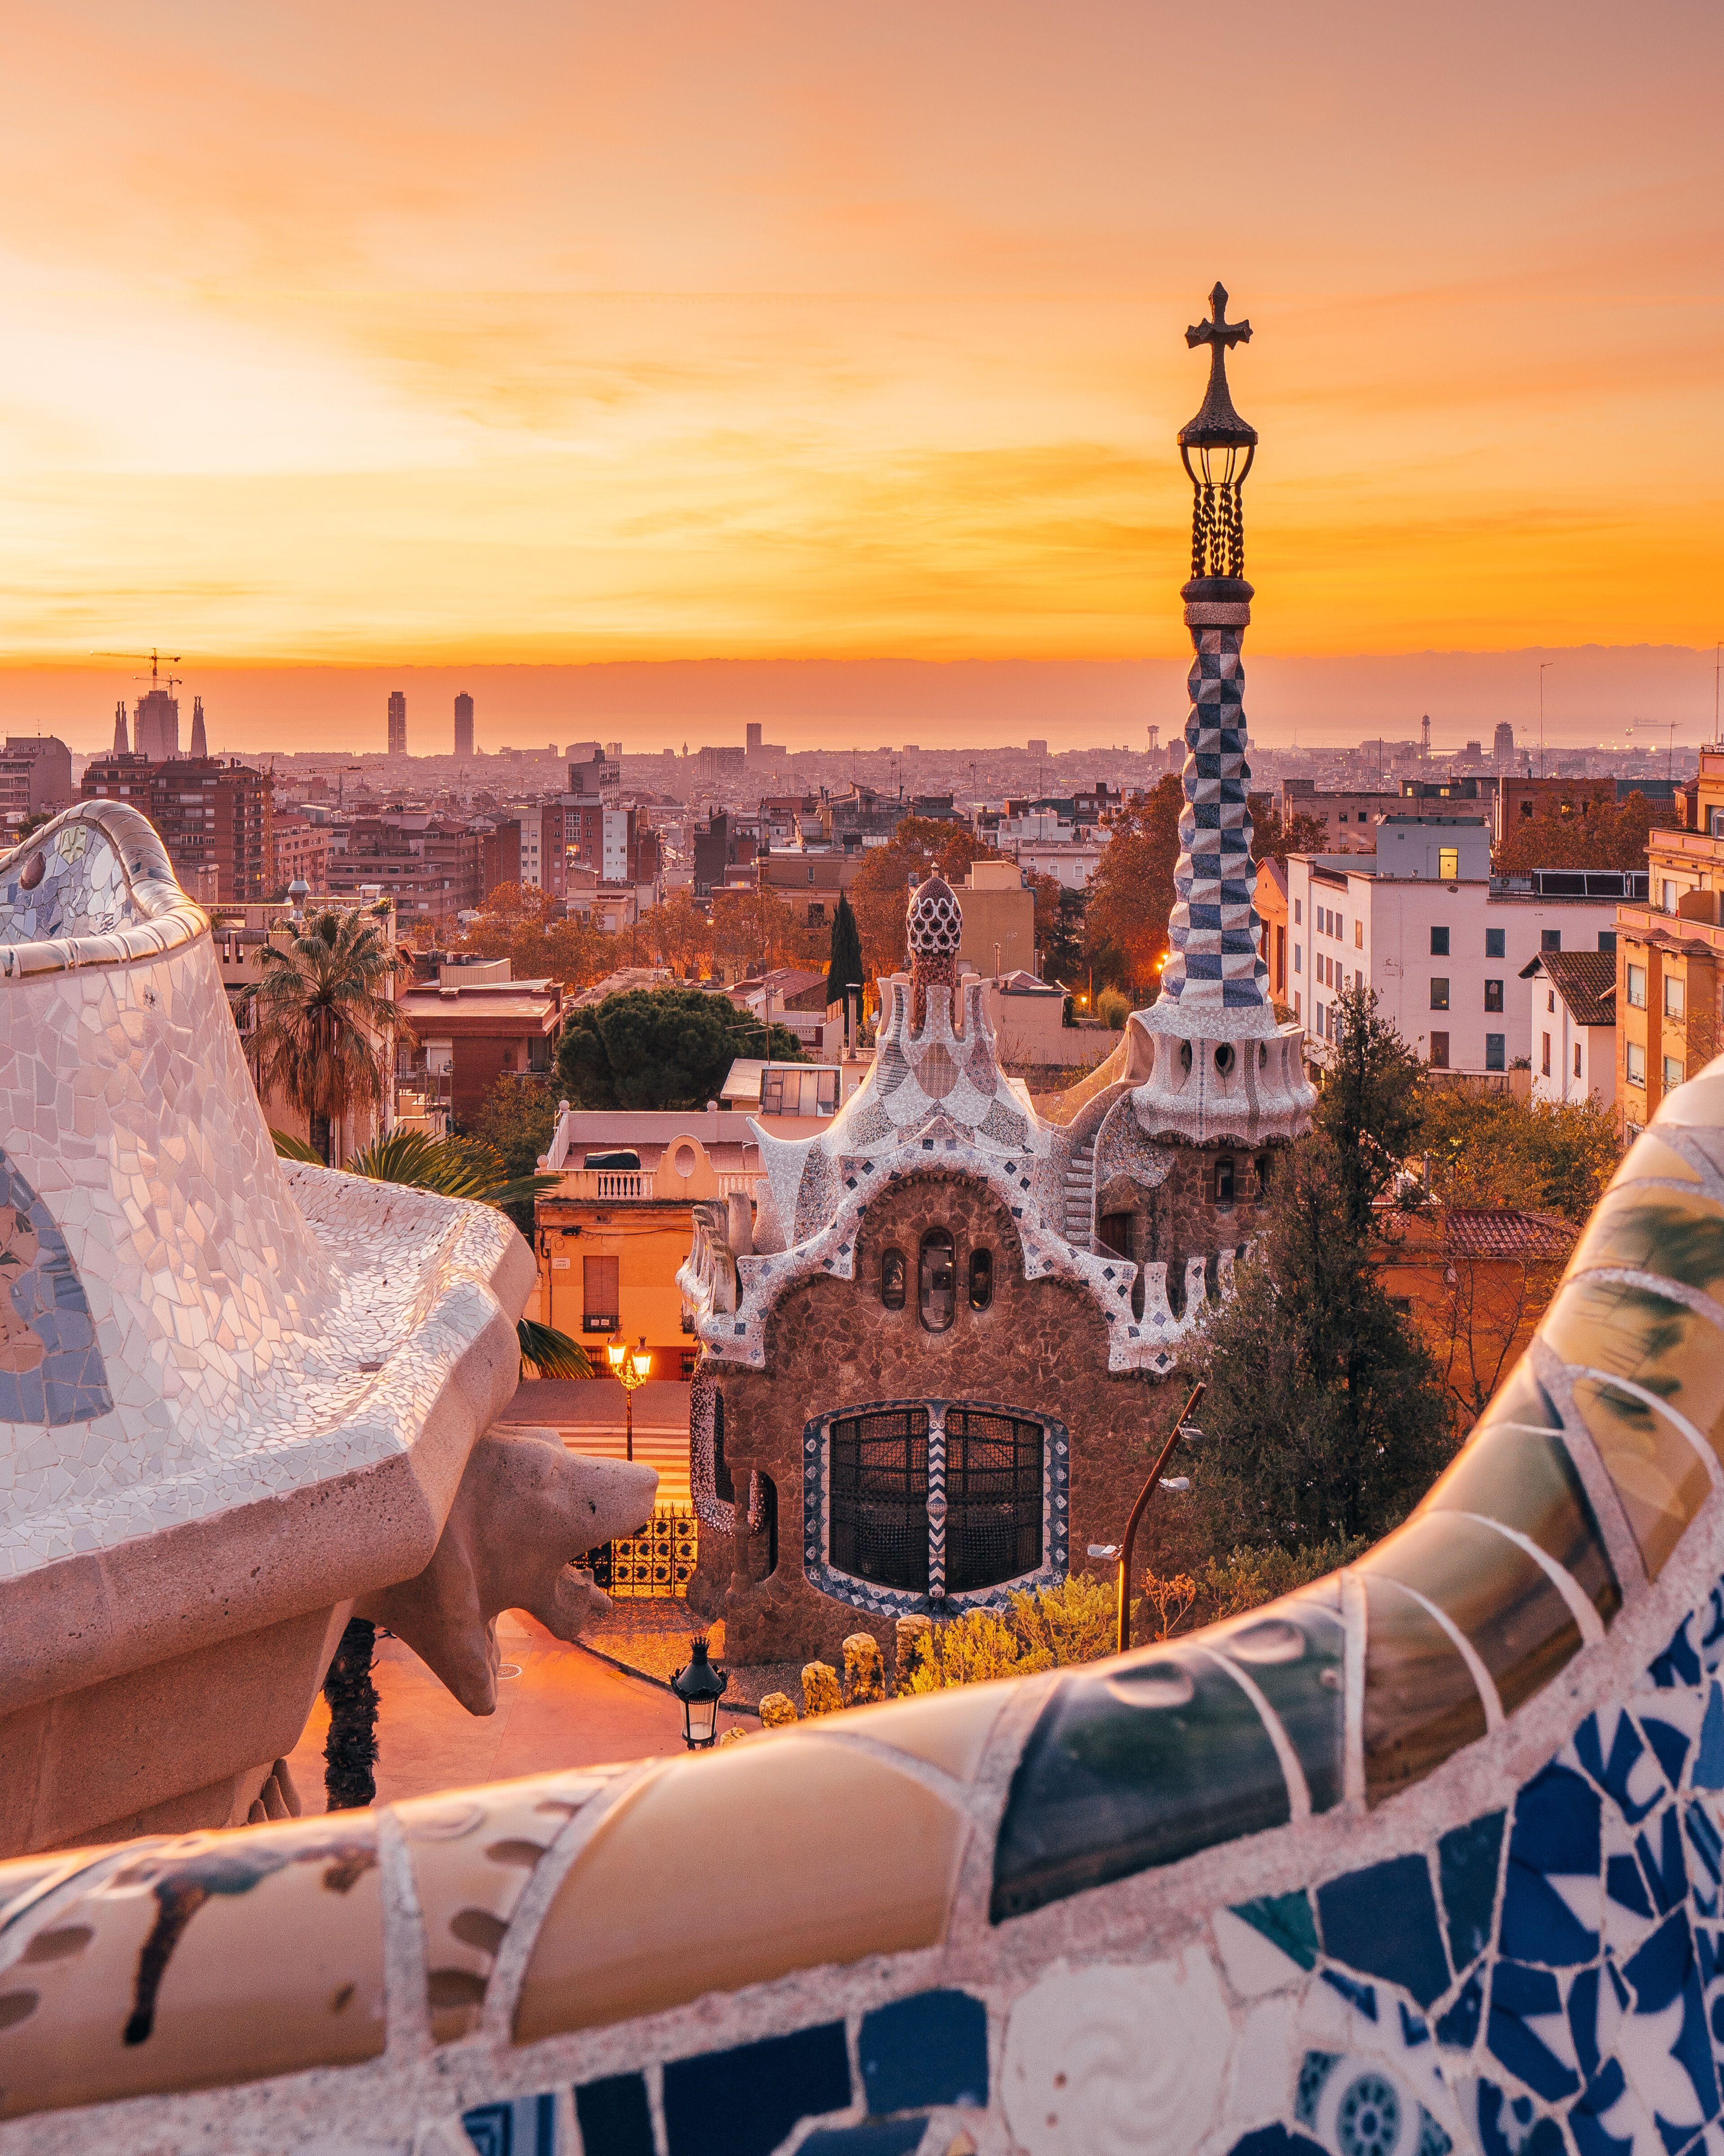 Magnifique lever de soleil à Barcelone vu depuis le parc Guell. Le parc a été construit de 1900 à 1914 et a été officiellement ouvert en tant que parc public en 1926. En 1984, l'UNESCO l'a déclaré site du patrimoine mondial.